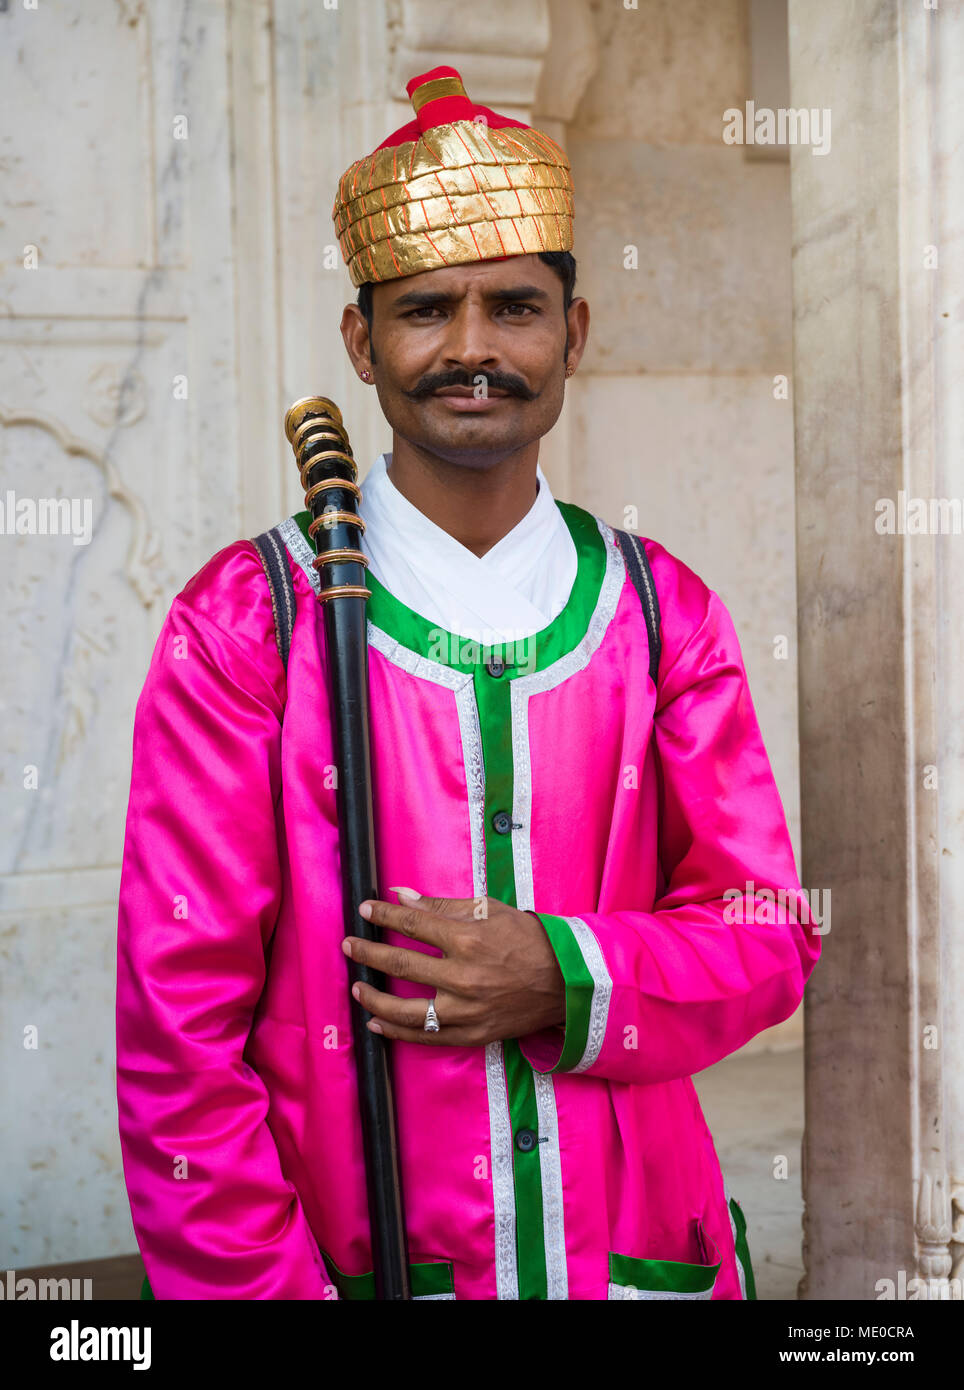 Ein Inder in bunte traditionelle indische Kleidung im City Palace, Jaipur,  Rajasthan, Indien Stockfotografie - Alamy